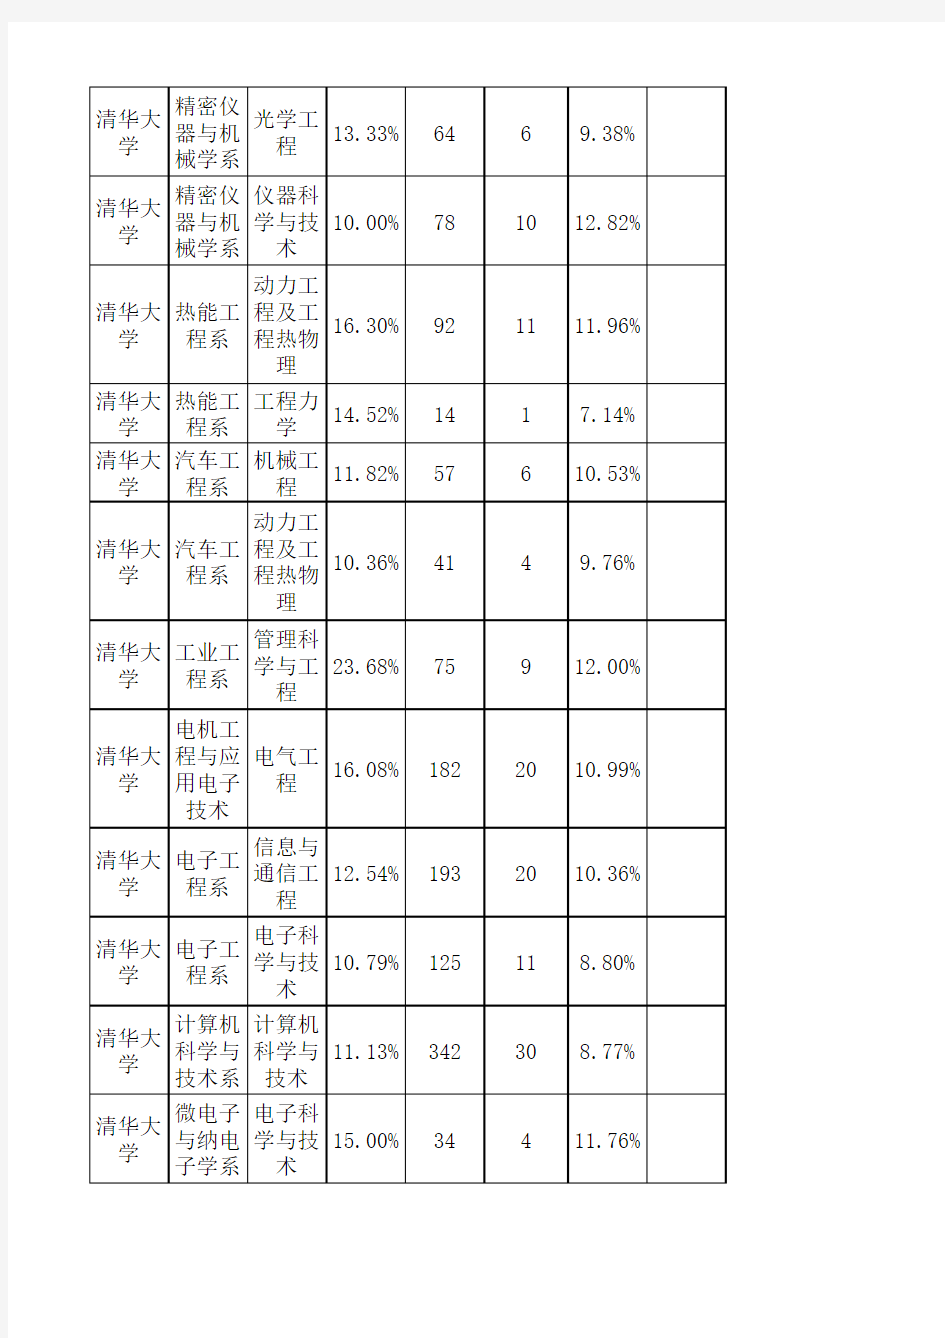 清华大学研究生2010-2011年录取比例